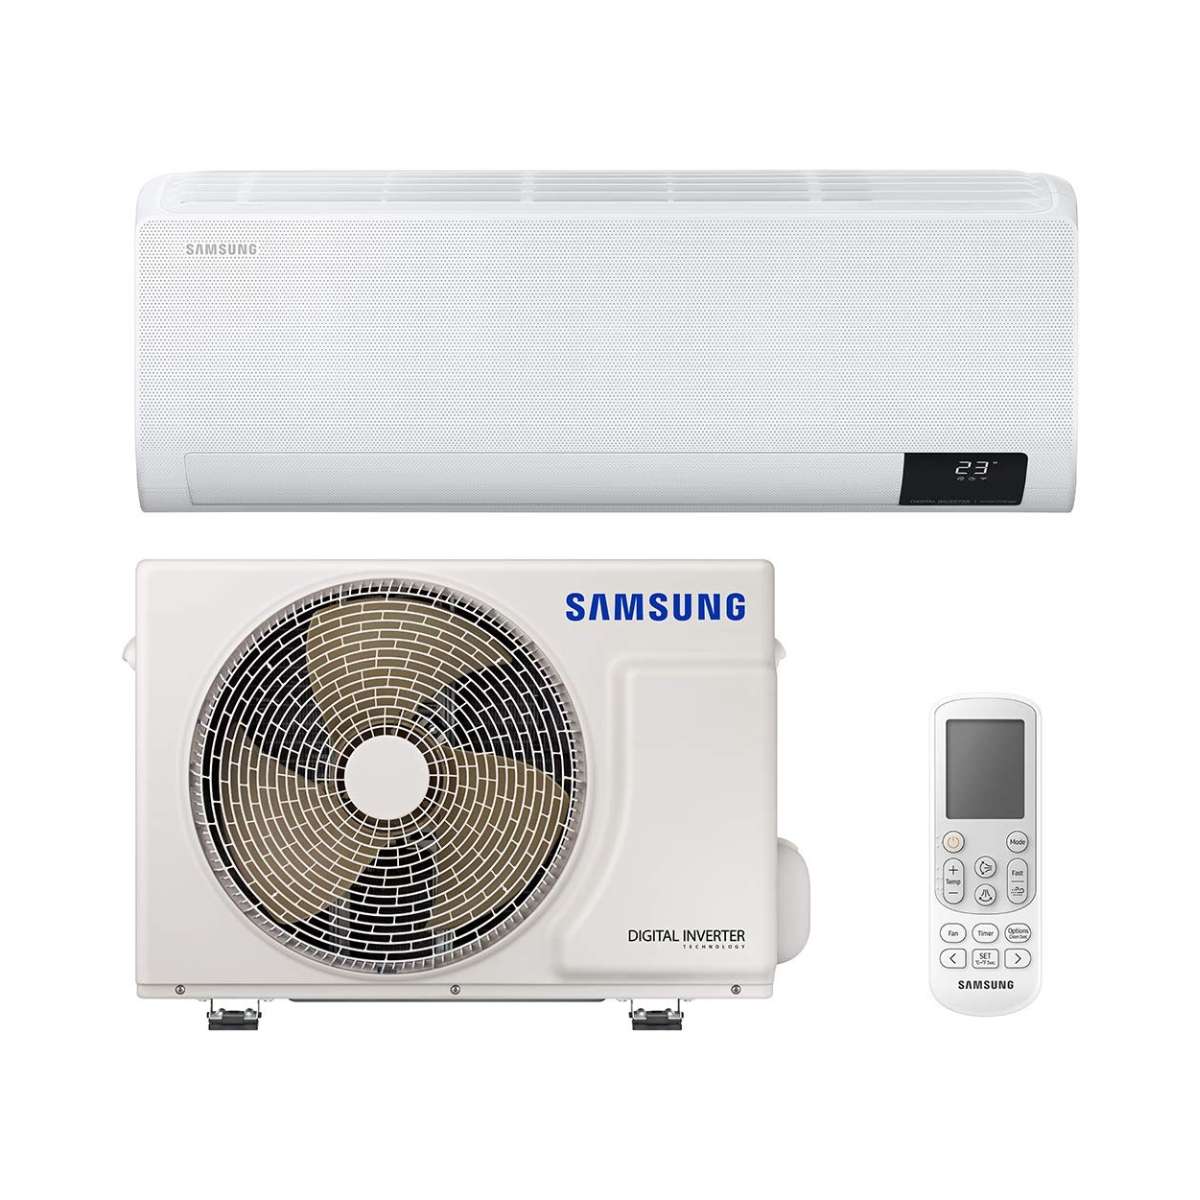 Split klimaanlage Samsung Wind Free Comfort F-AR09NXT 2,5kW 9000 BTU mit der Referenz F-AR09NXT von der Marke SAMSUNG